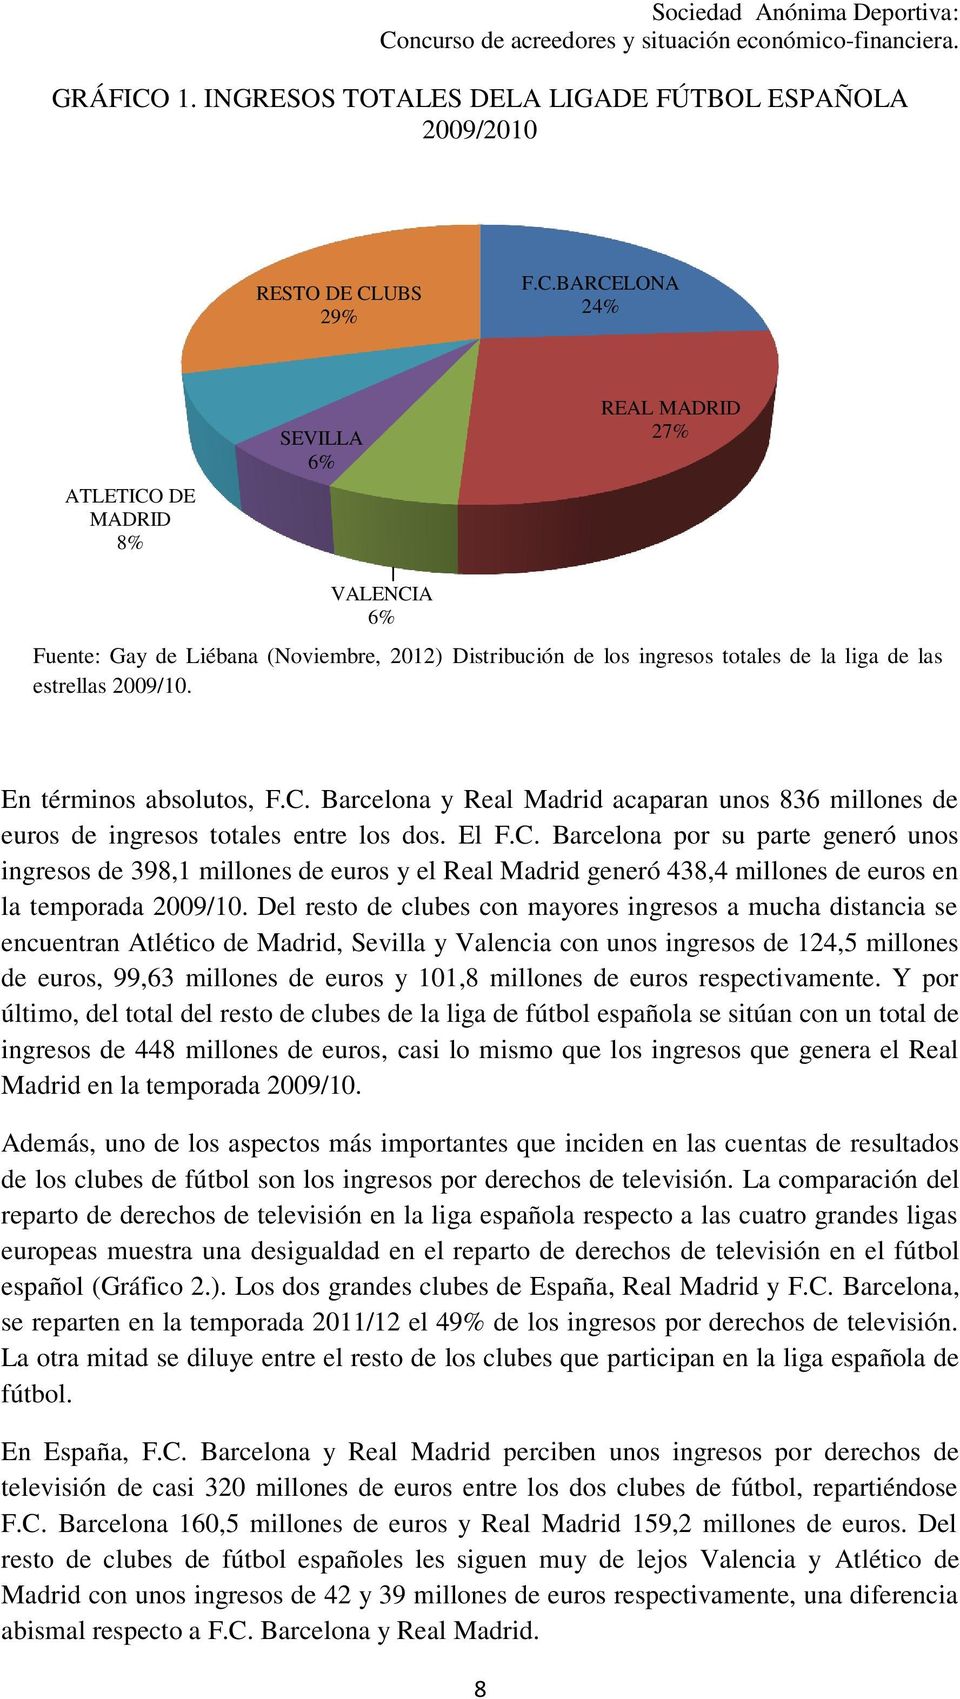 Del resto de clubes con mayores ingresos a mucha distancia se encuentran Atlético de Madrid, Sevilla y Valencia con unos ingresos de 124,5 millones de euros, 99,63 millones de euros y 101,8 millones